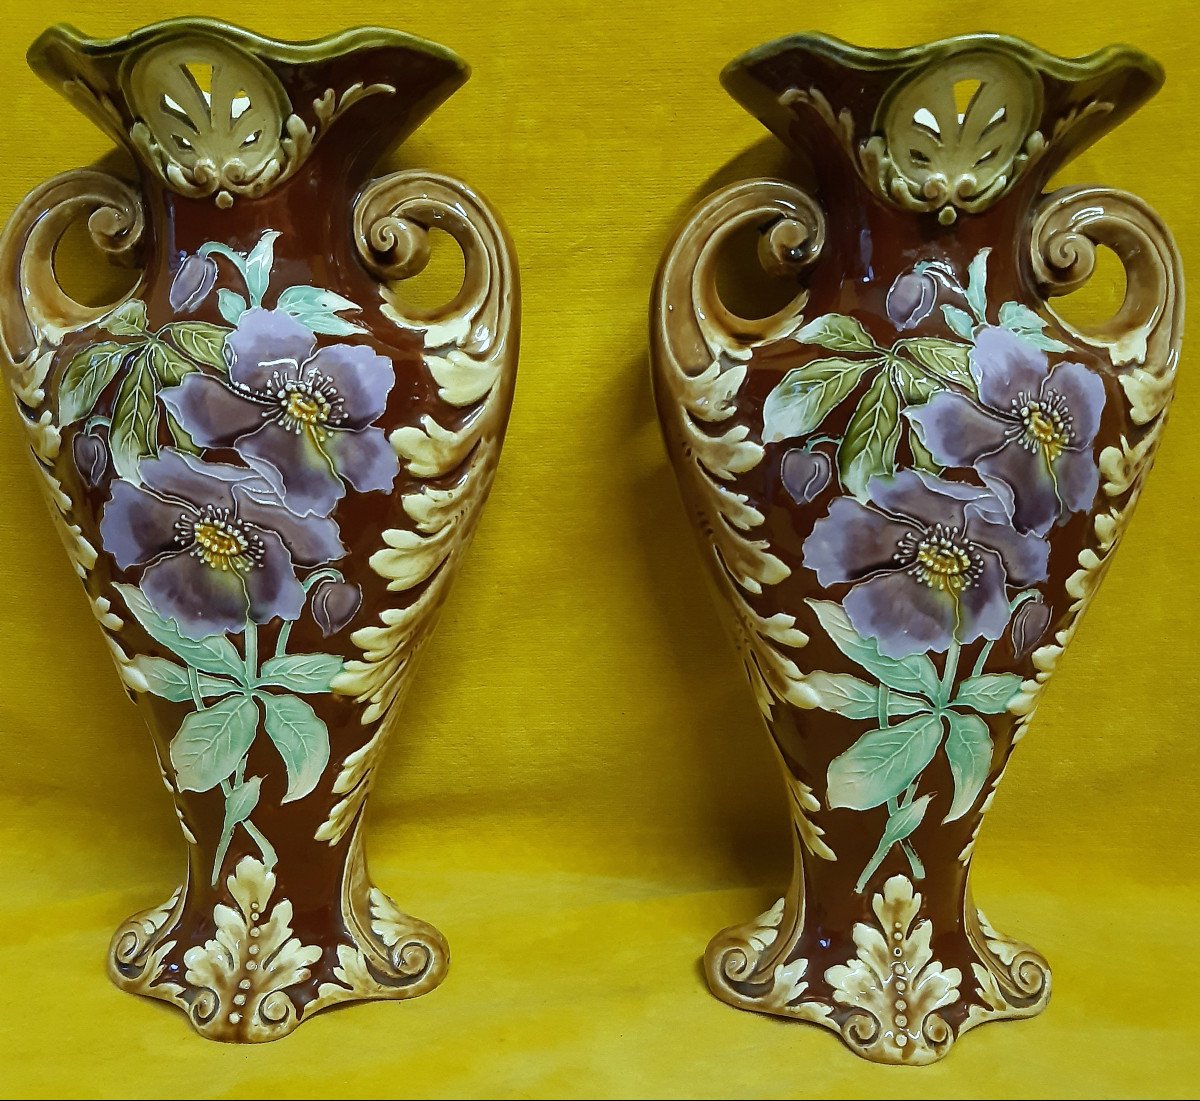 2 Grands Vases Barbotines Majolique  Art Nouveaux Décor Fleur Style Cloisonné 1900